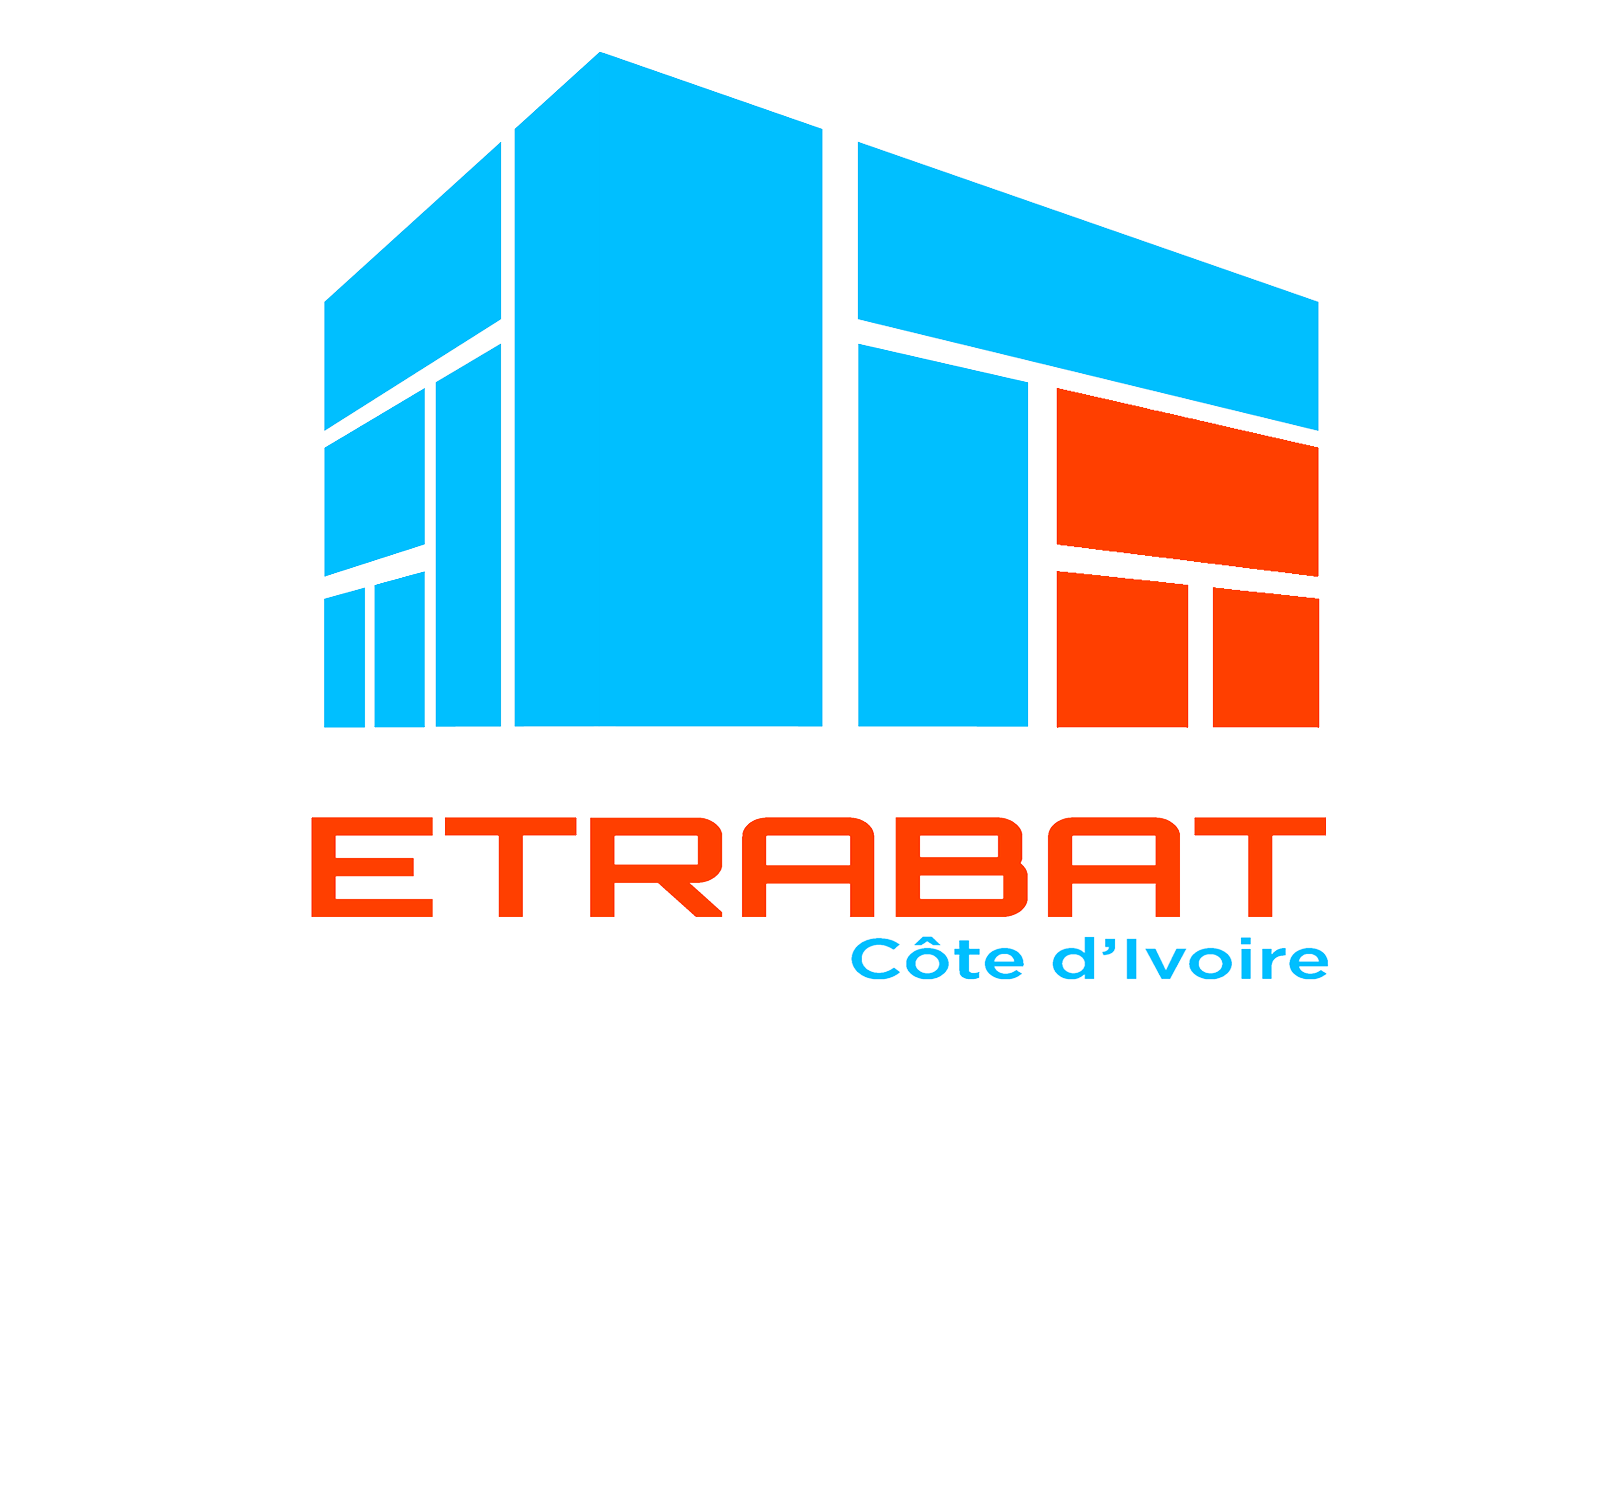 ETRABAT COTE D'IVOIRE